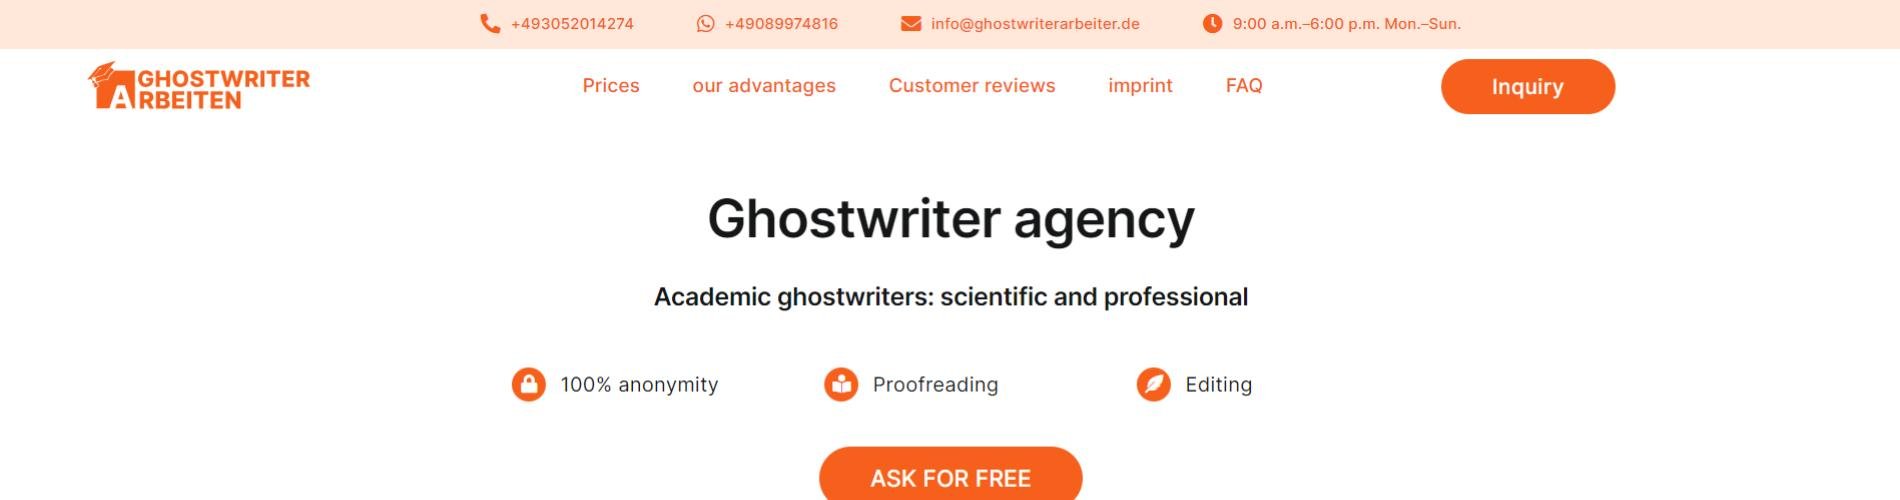 Ghostwriter Arbeiten cover